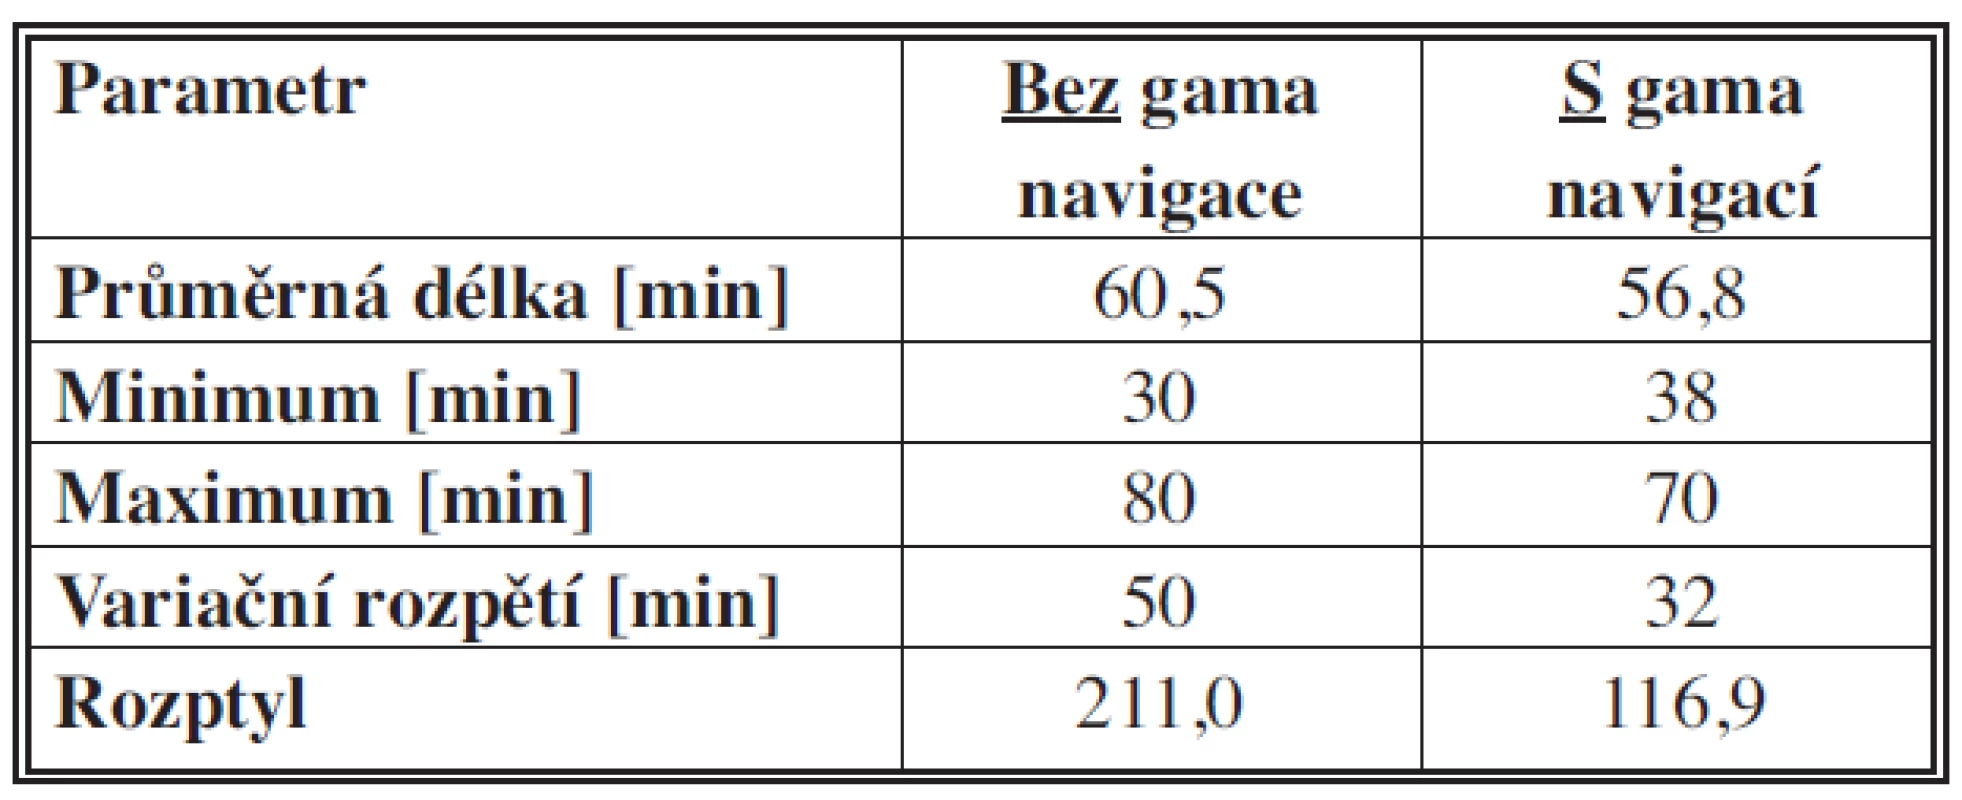 Porovnání délky operací u souborů operovaných s a bez gama navigace
Tab. 1: Comparison of operation times in groups operated on with and without gamma navigation